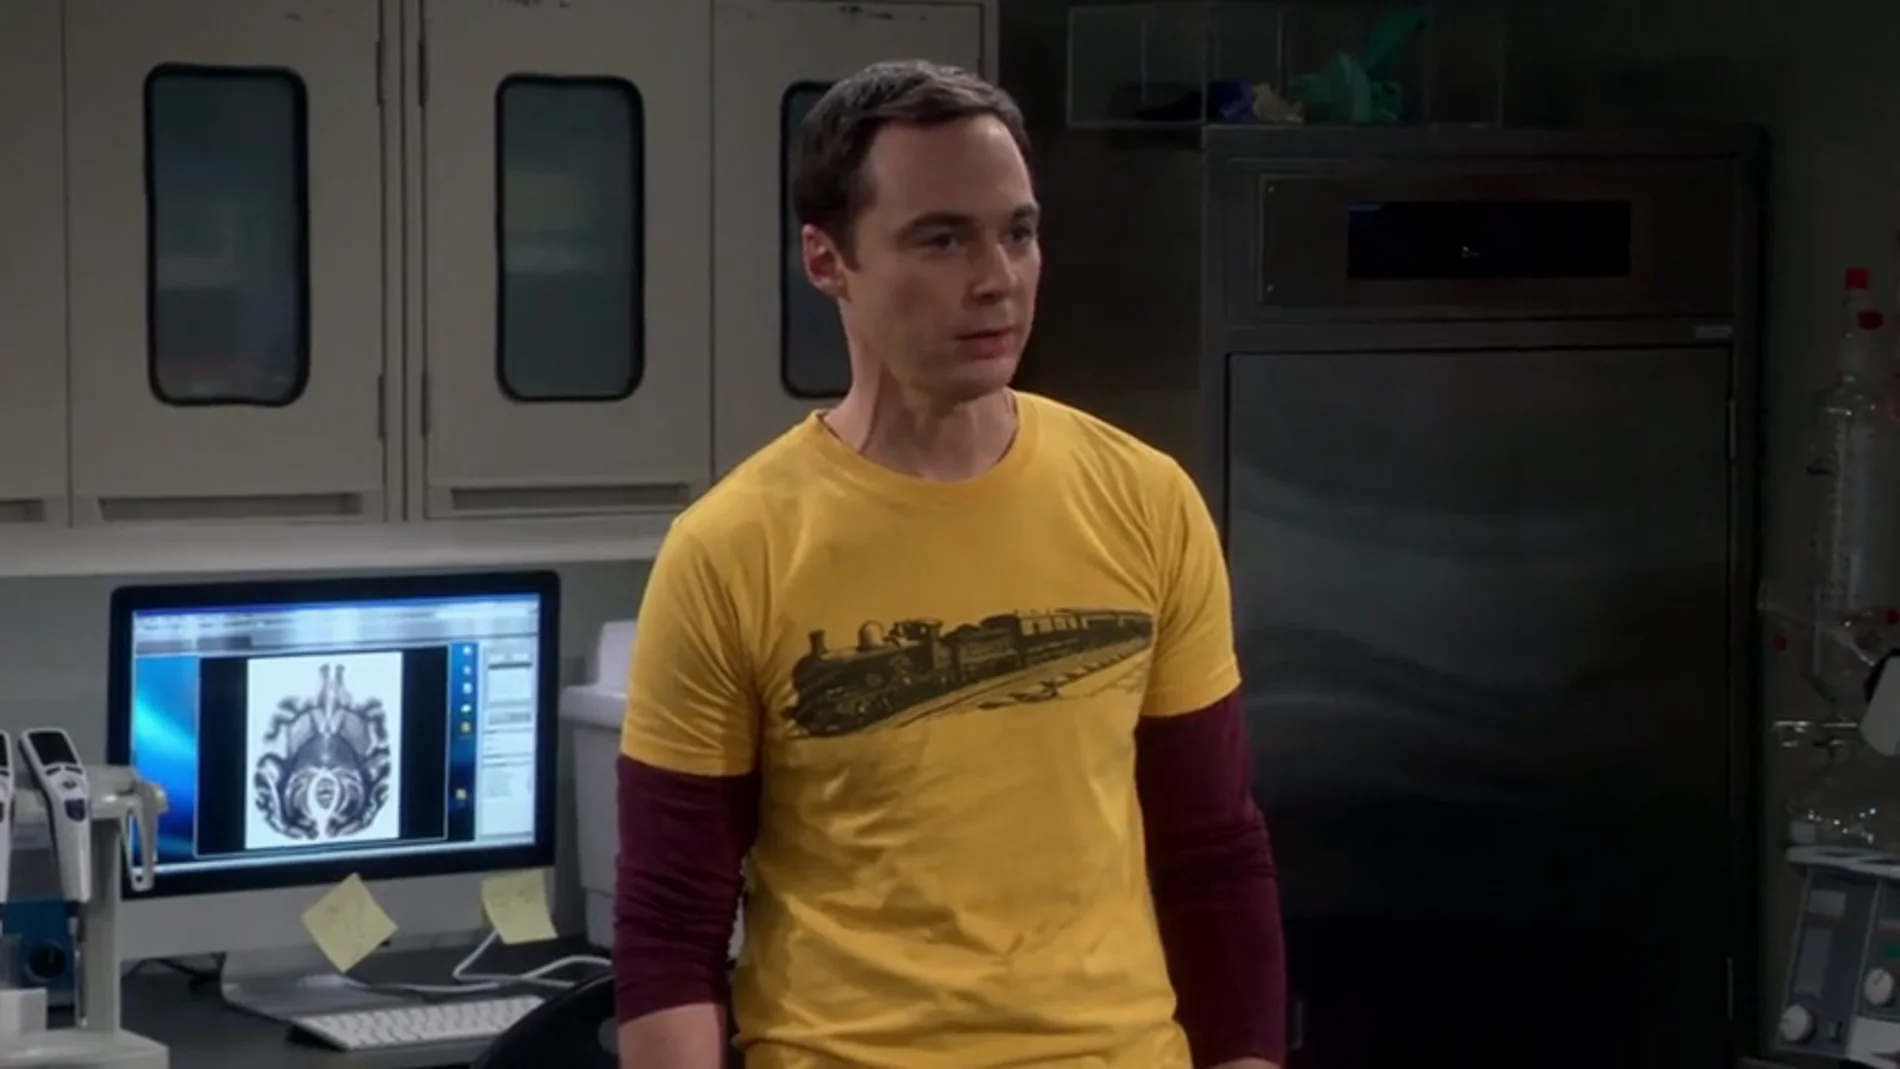 Frame 35.206743 de: Sheldon: "Creía que te encantaría procear conmigo"